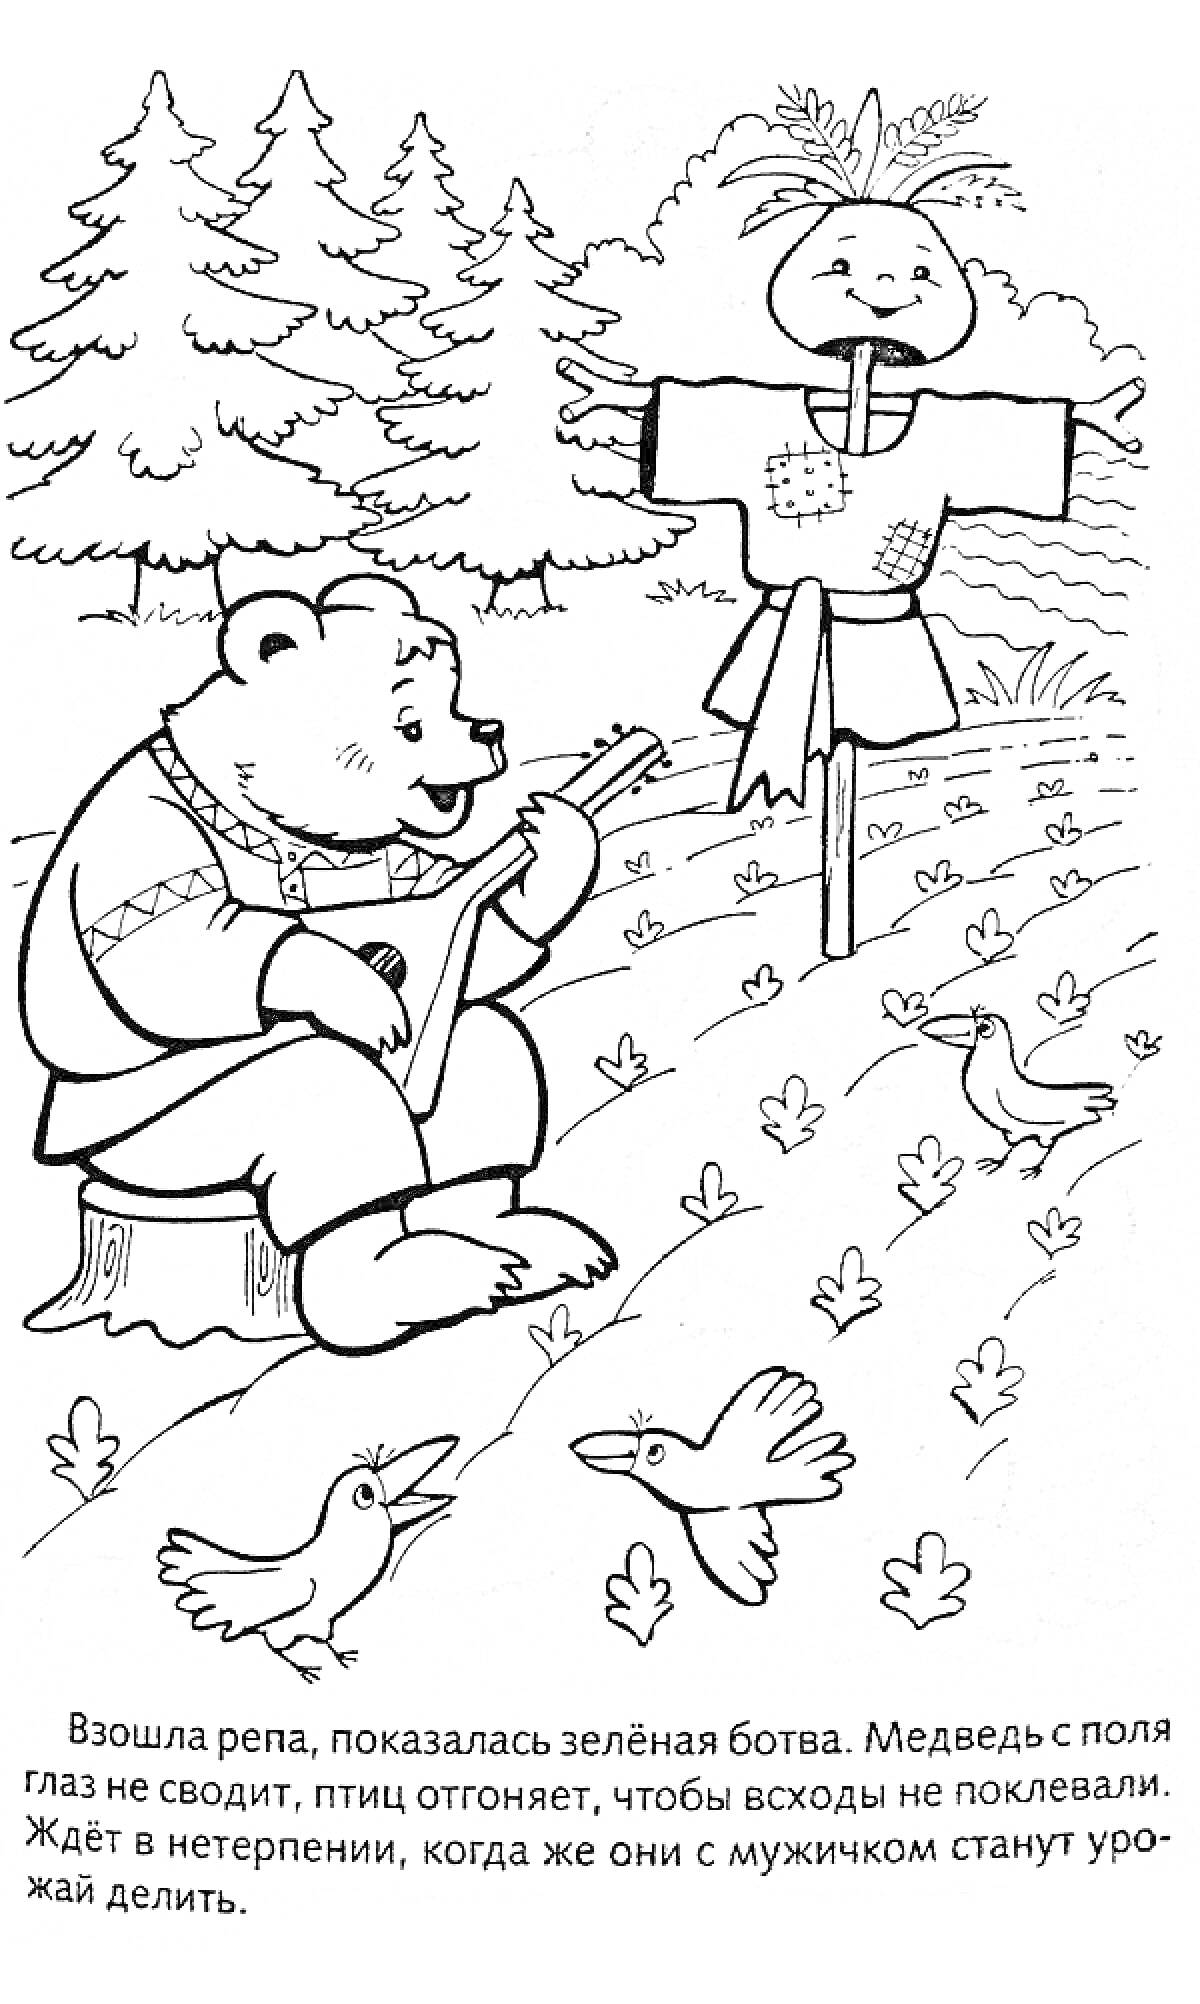 Медведь охраняет репу с гитарой, чучело, птицы и лес на заднем плане